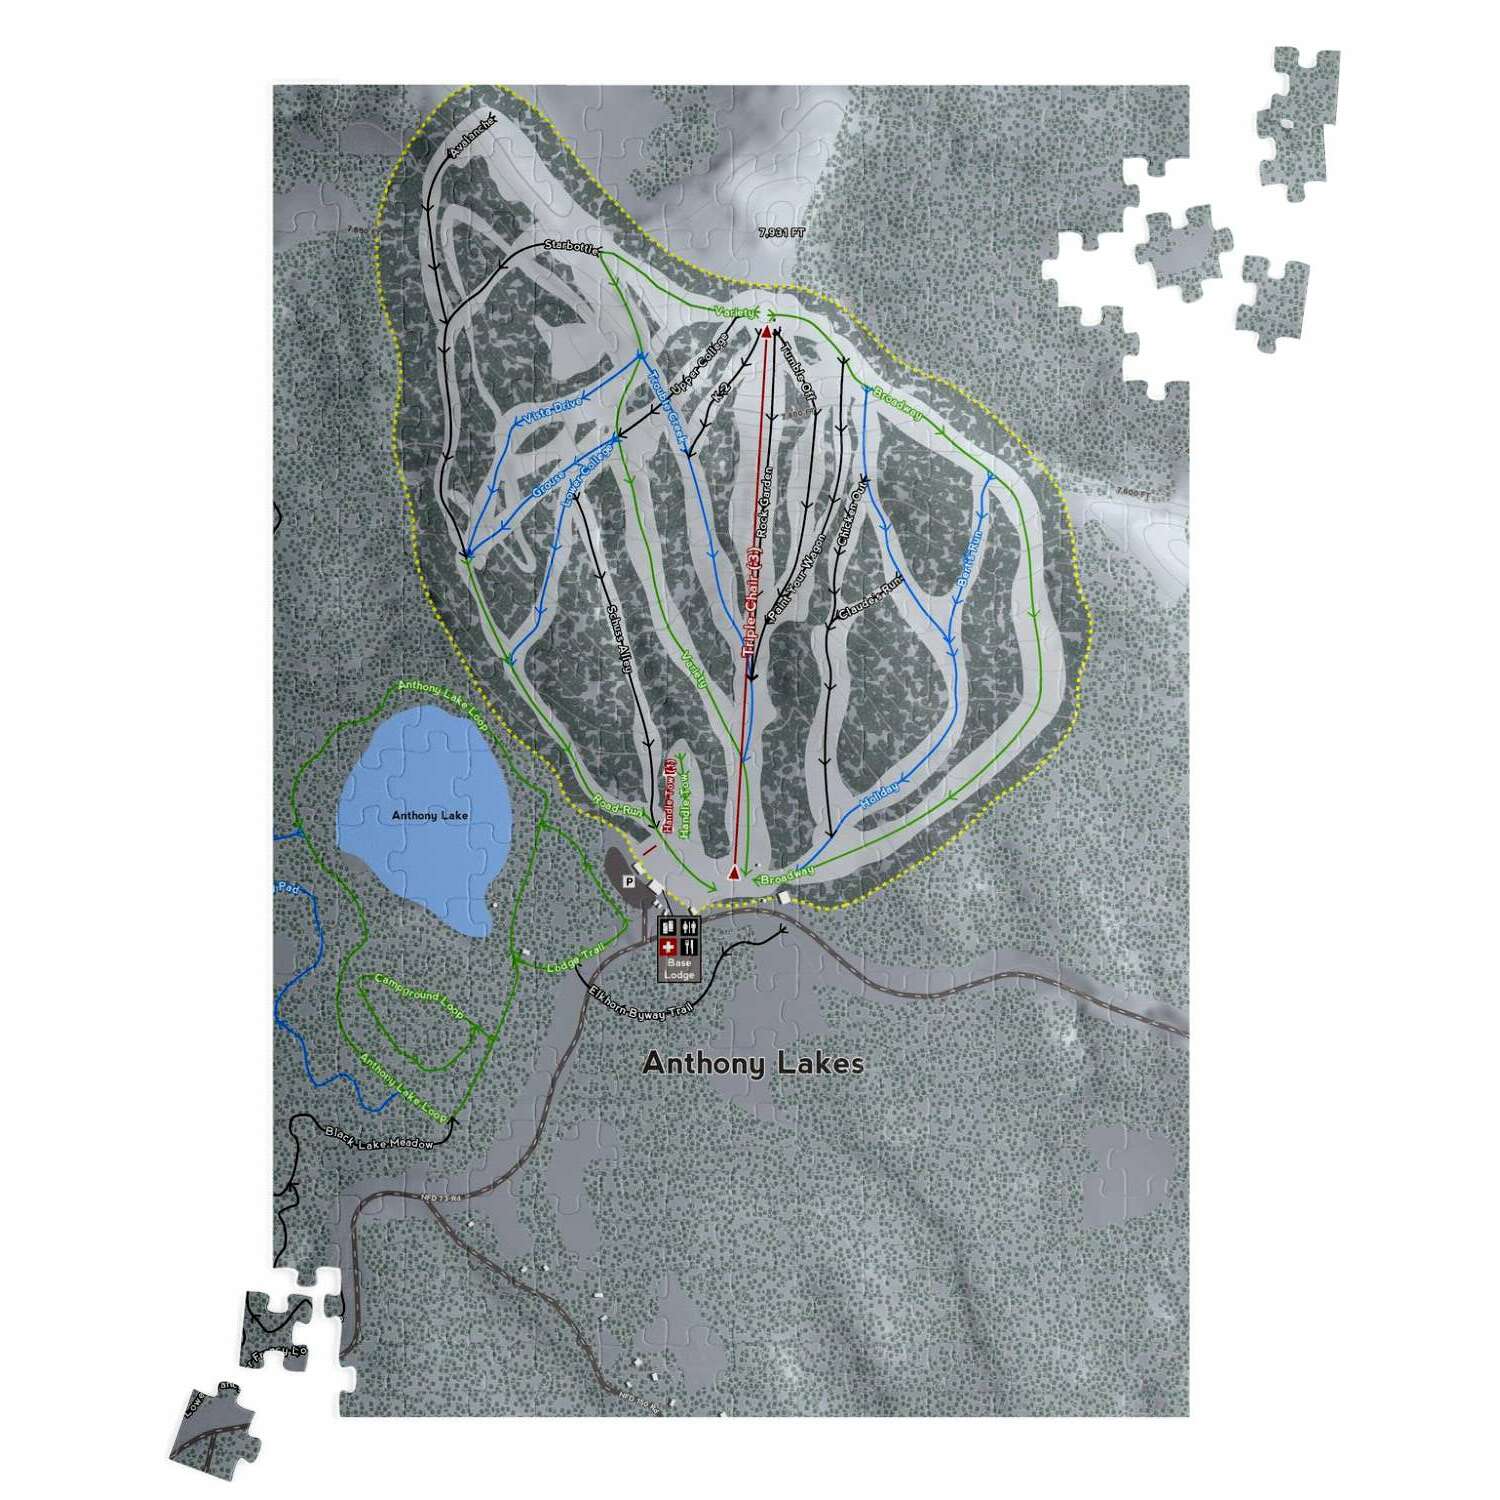 Anthony Lakes, Oregon Ski Trail Map Puzzle - Powderaddicts